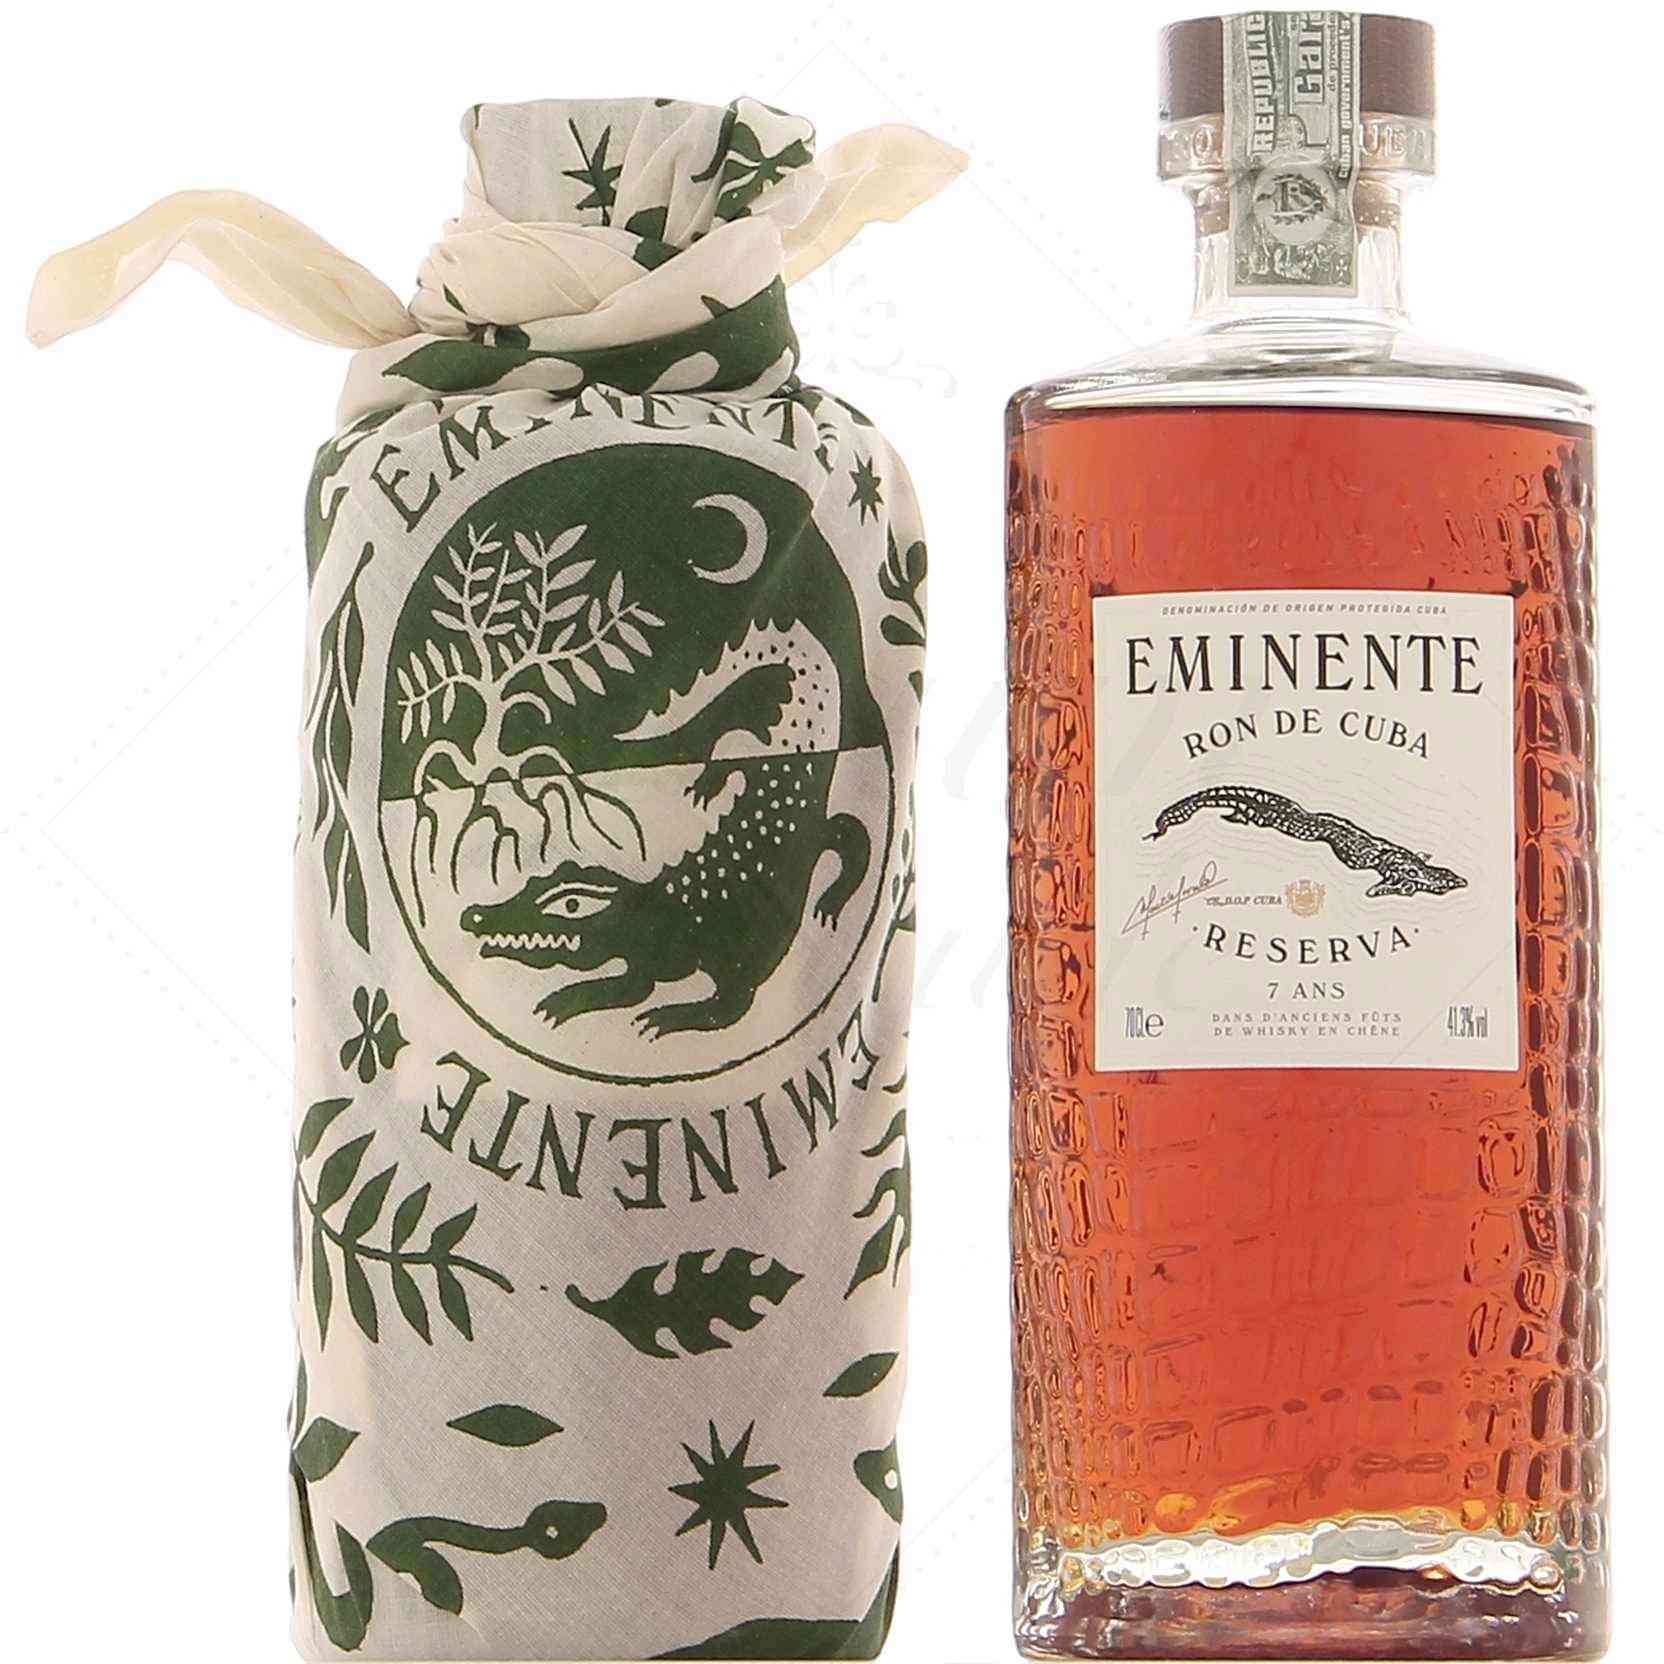 Eminente Rum Reserva Aged 7 Years Spirits